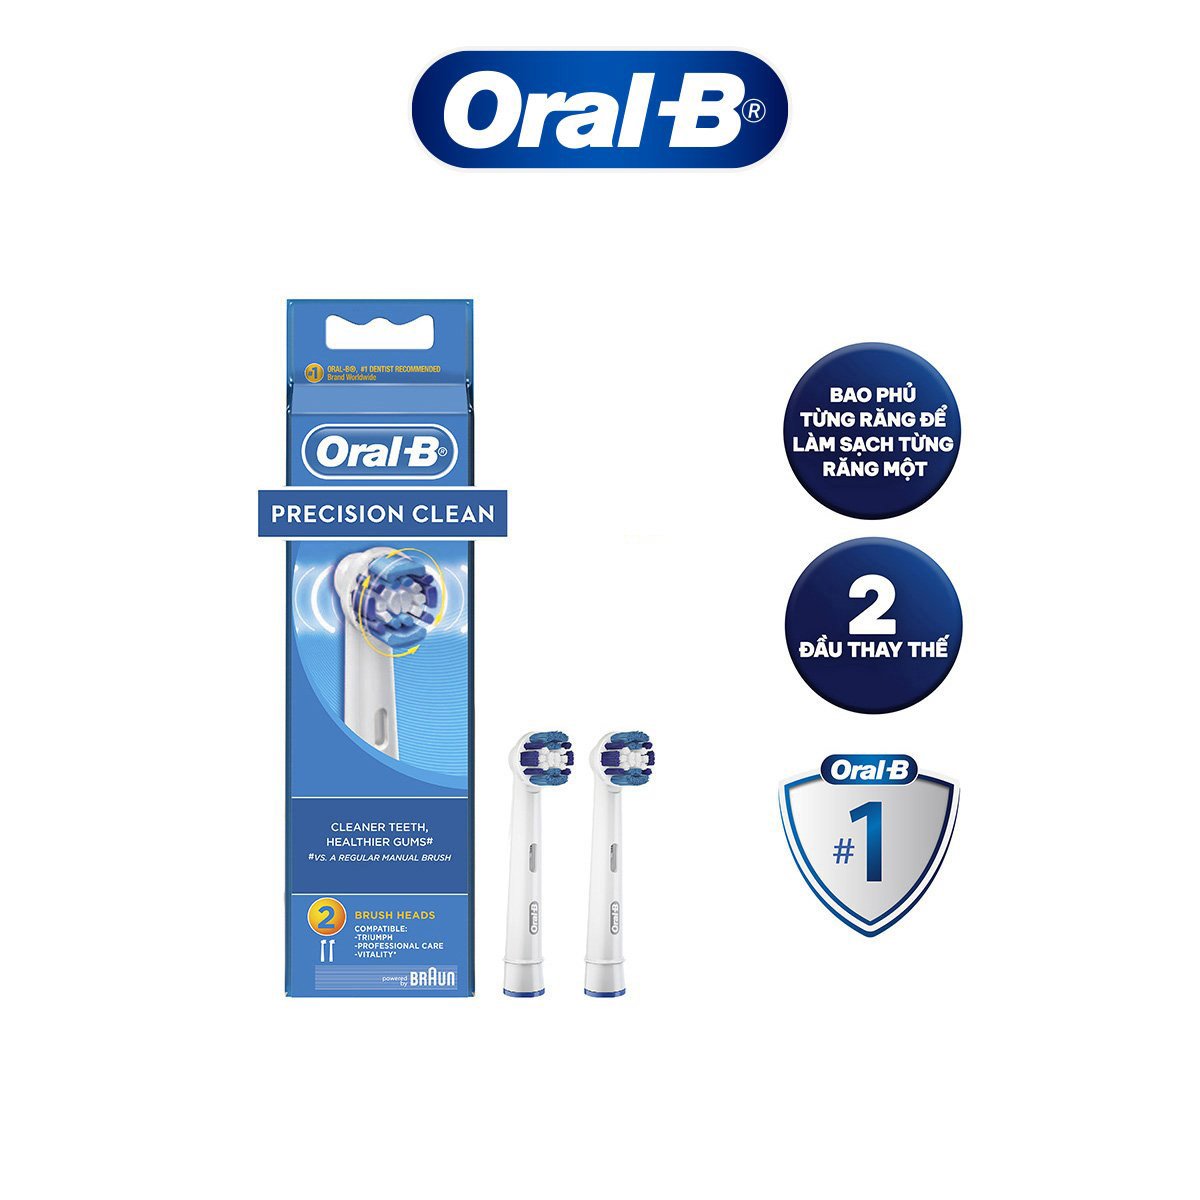 Đầu bàn chải Oral-B Precision Clean - Hàng chính hãng 100